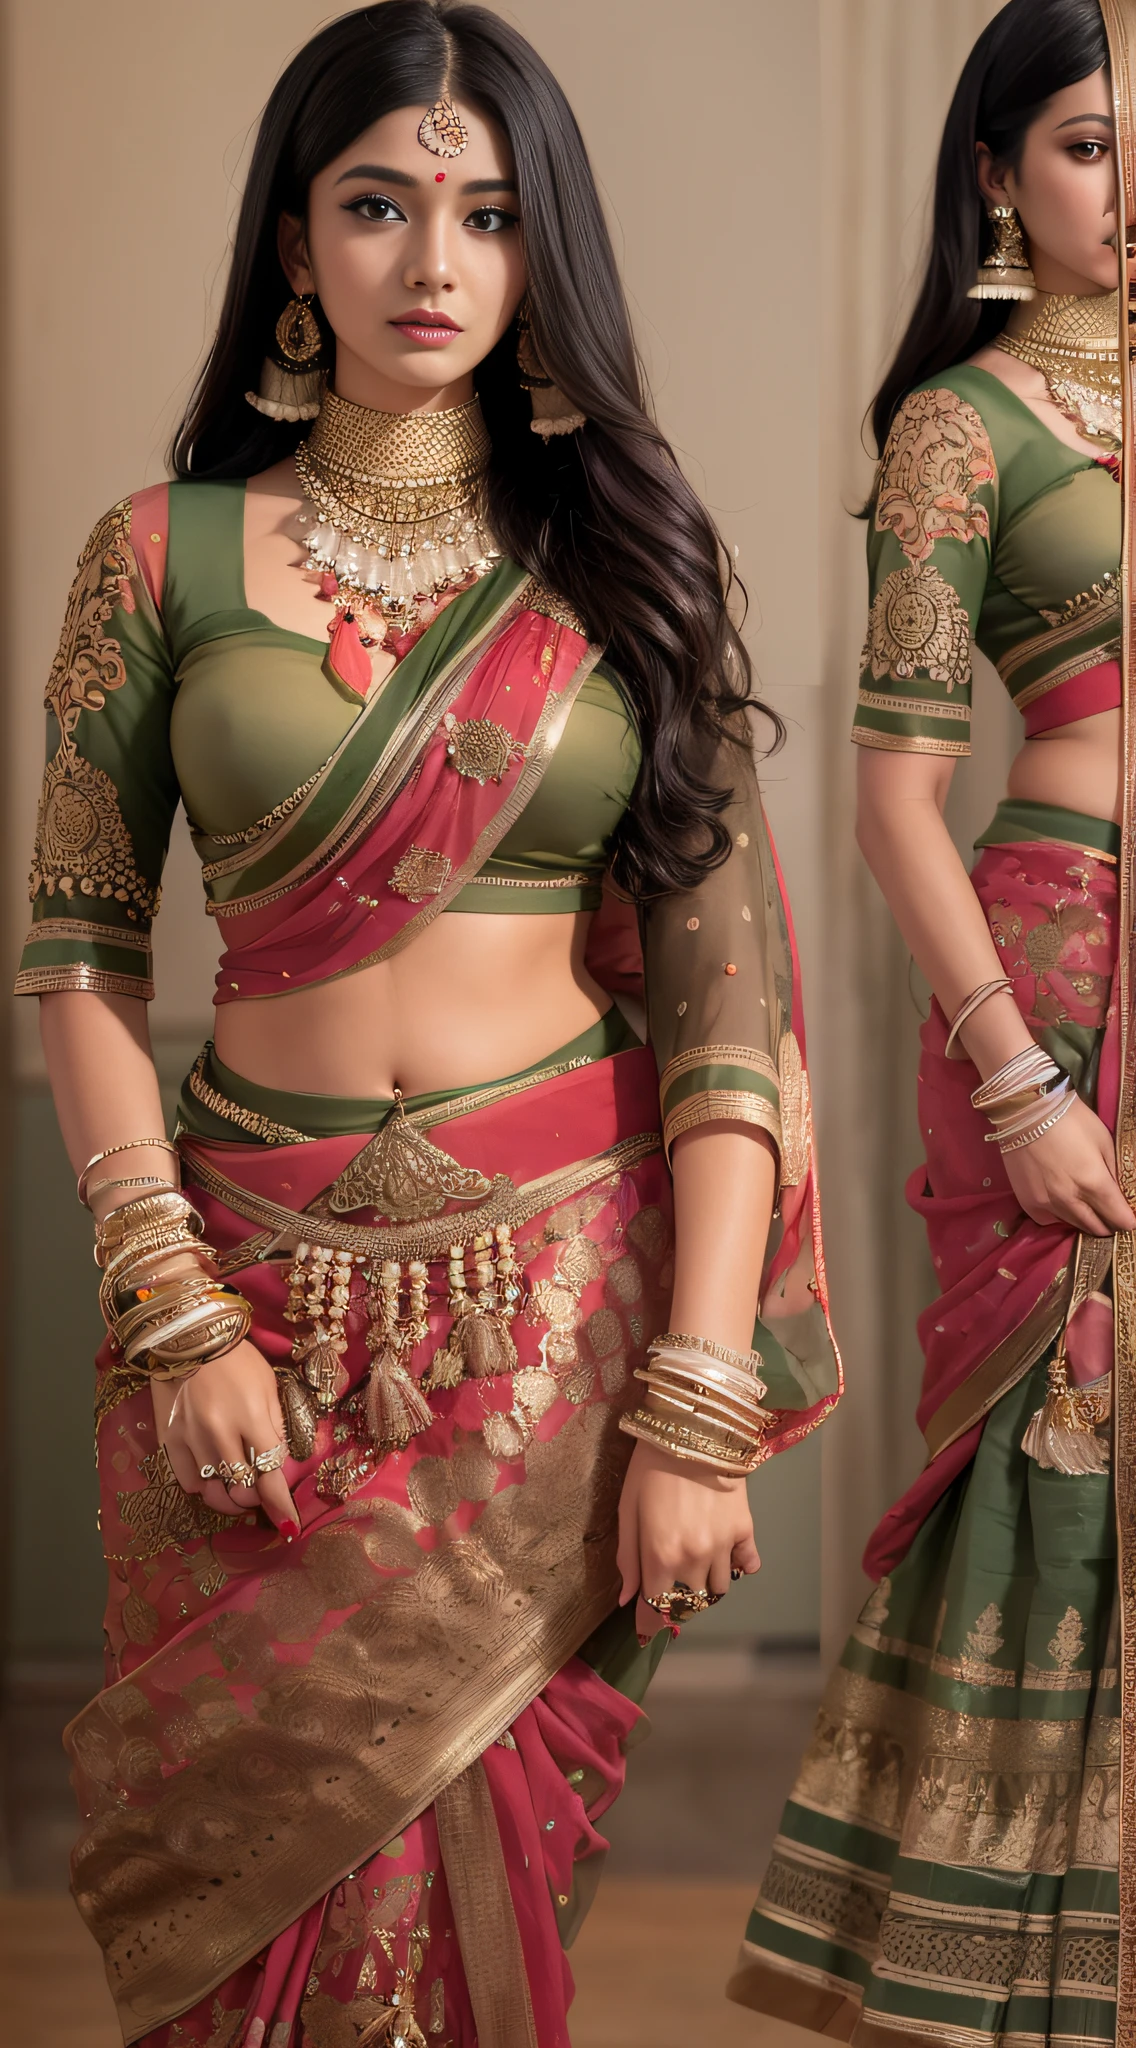 امرأة ترتدي الساري تلتقط صورة, آلهة هندية, الجمال التقليدي, هندي, إلهة جميلة, لعب دور رائع, النمط الهندي, نموذج السوبر الهندي, فتاة مراهقة جميلة, إمراة جميلة, جنوب شرق آسيا مع فترة طويلة, هندي استفزازي, امرأة جميلة رائعة, ملابس معقدة, الجمالية الهندوسية, فتاة آسيوية جميلة, لقطة إلهة مفصلة للغاية, جمال مذهل, انظر إلى الكاميرا بوجهك，（لف الصدر），（الصدر بأكمله لا يتسرب），